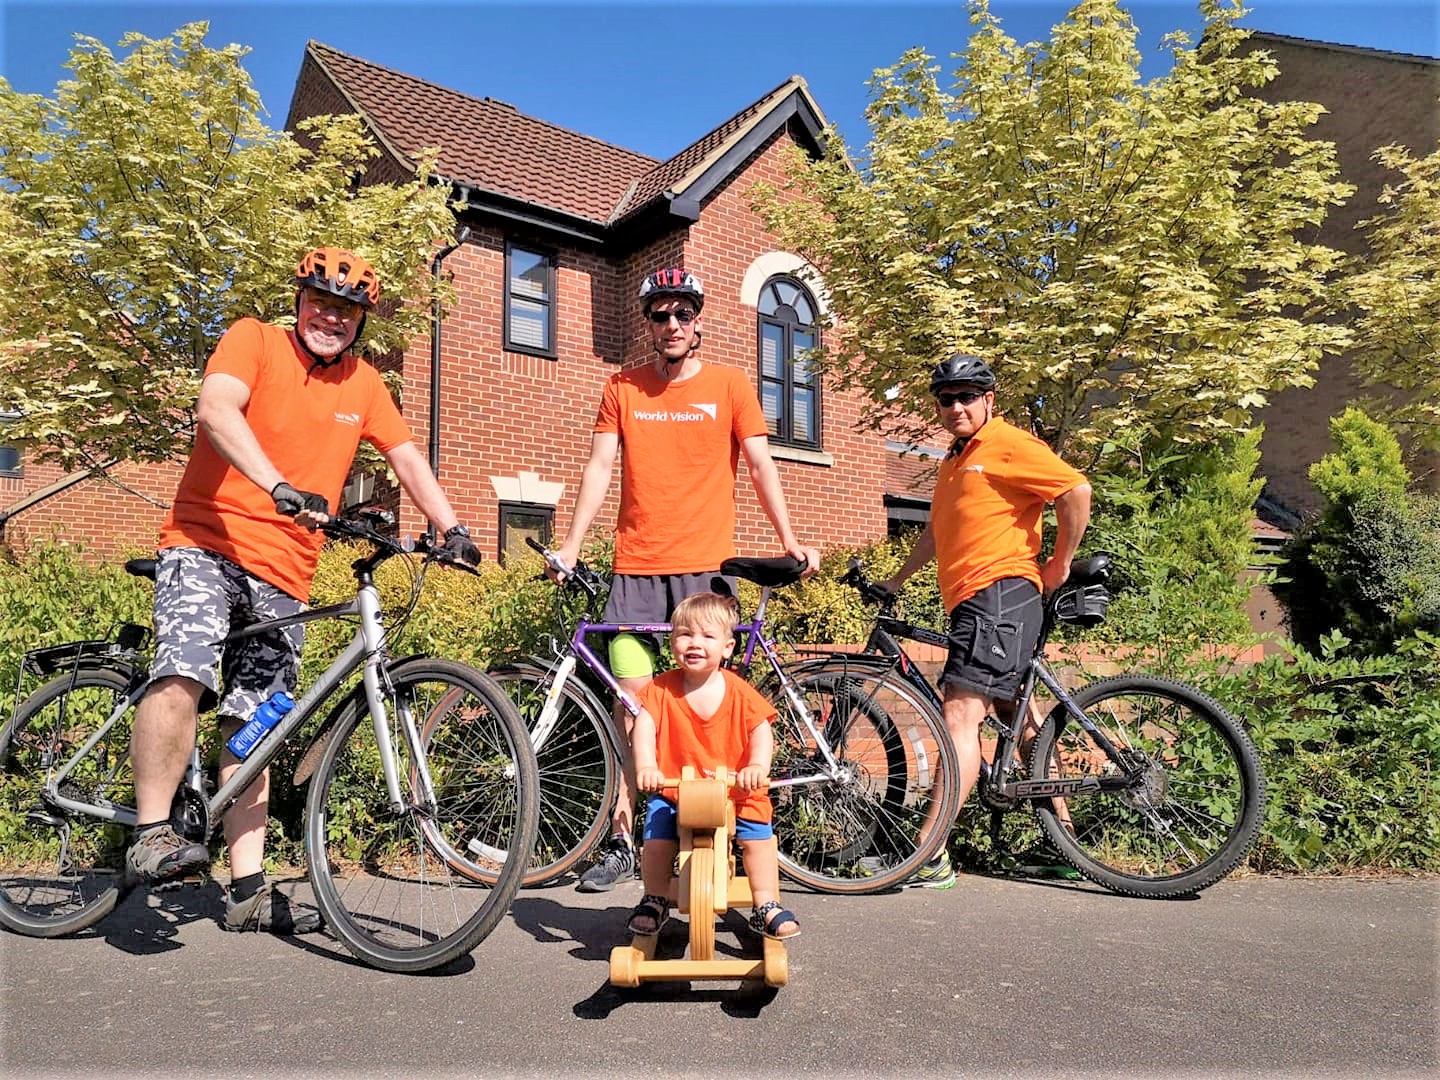 Famiglia di quattro persone posa con le biciclette in maglietta arancione per raccogliere fondi per proteggere i bambini dal coronavirus